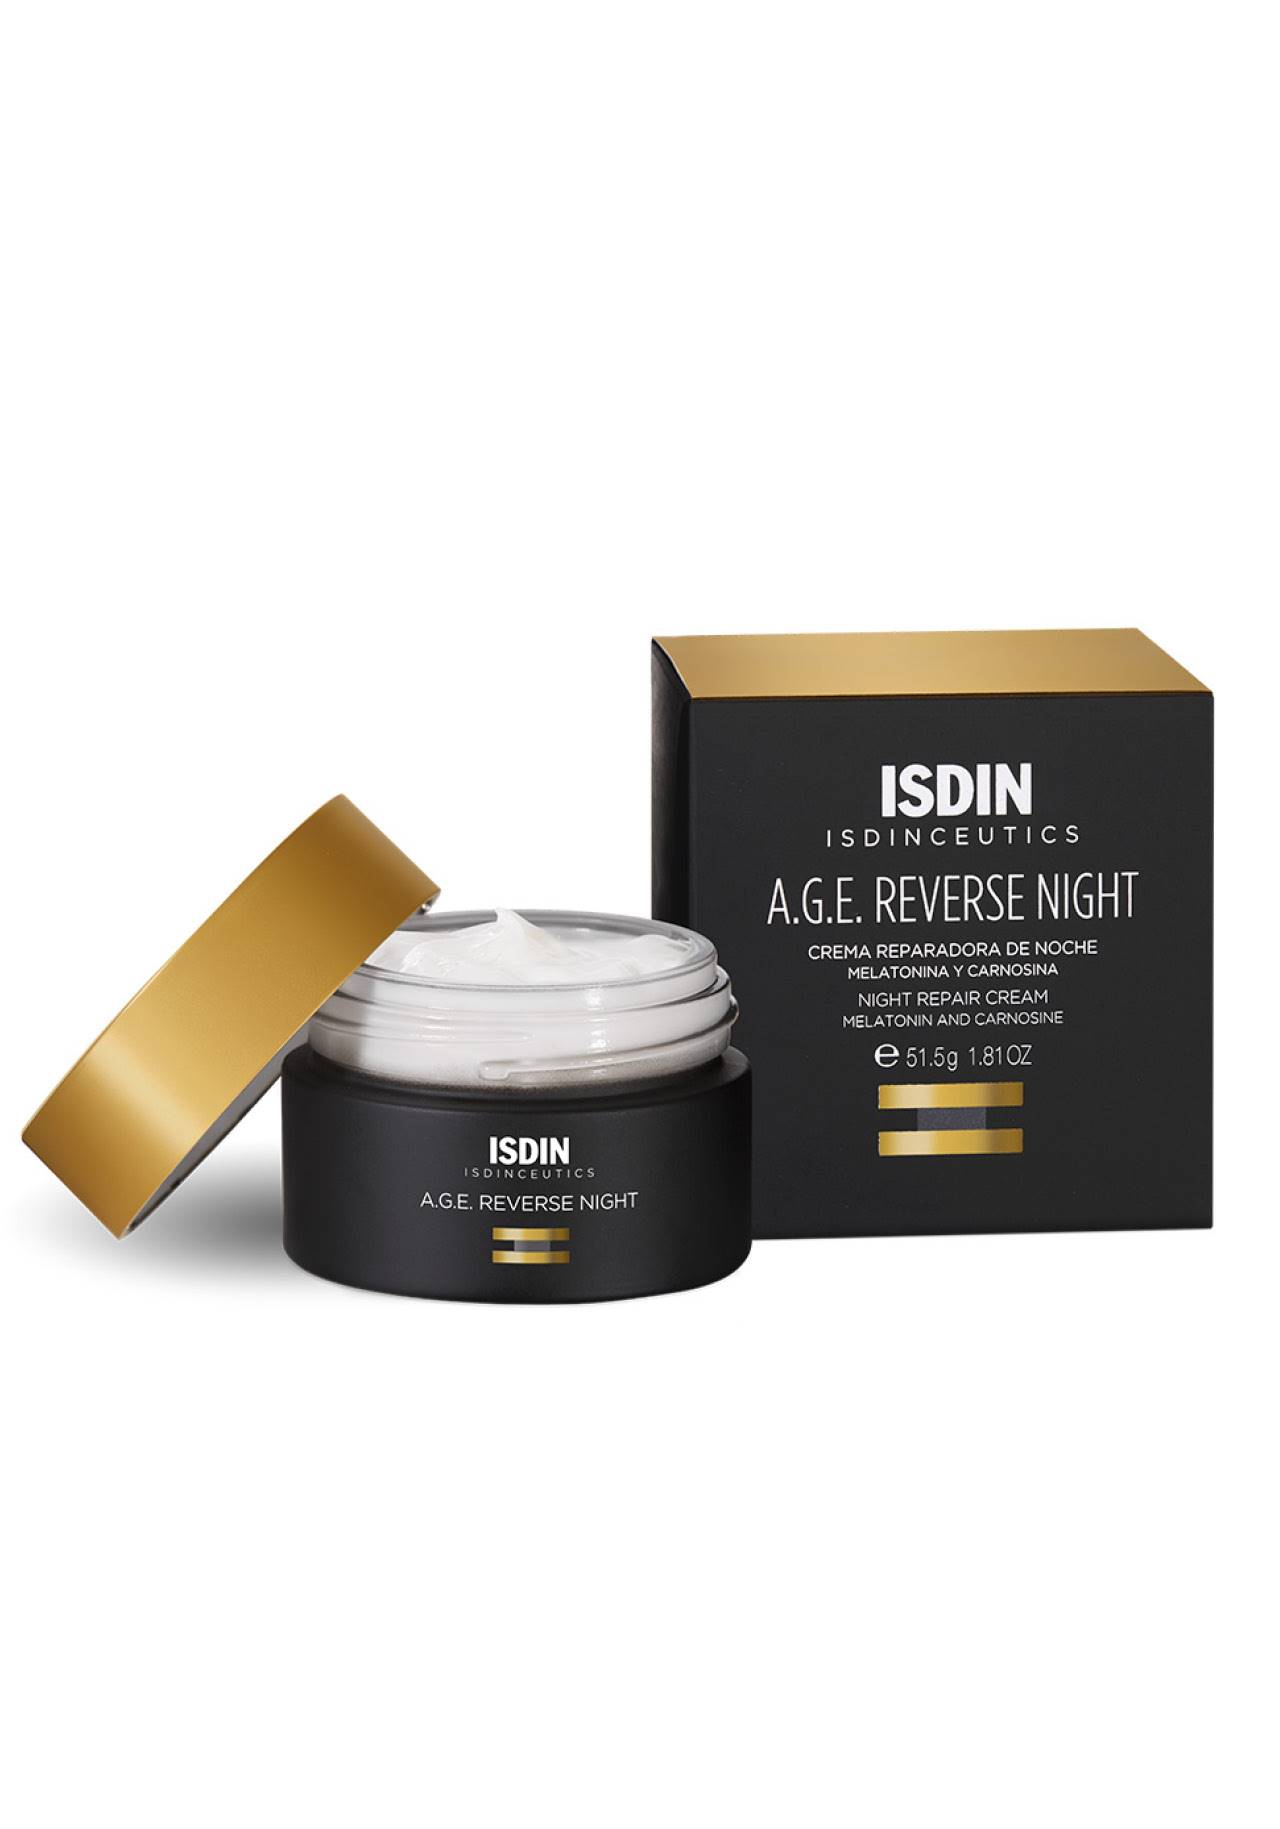 Mejores cremas para 60 años: A.G.E. Reverse Night de Isdin